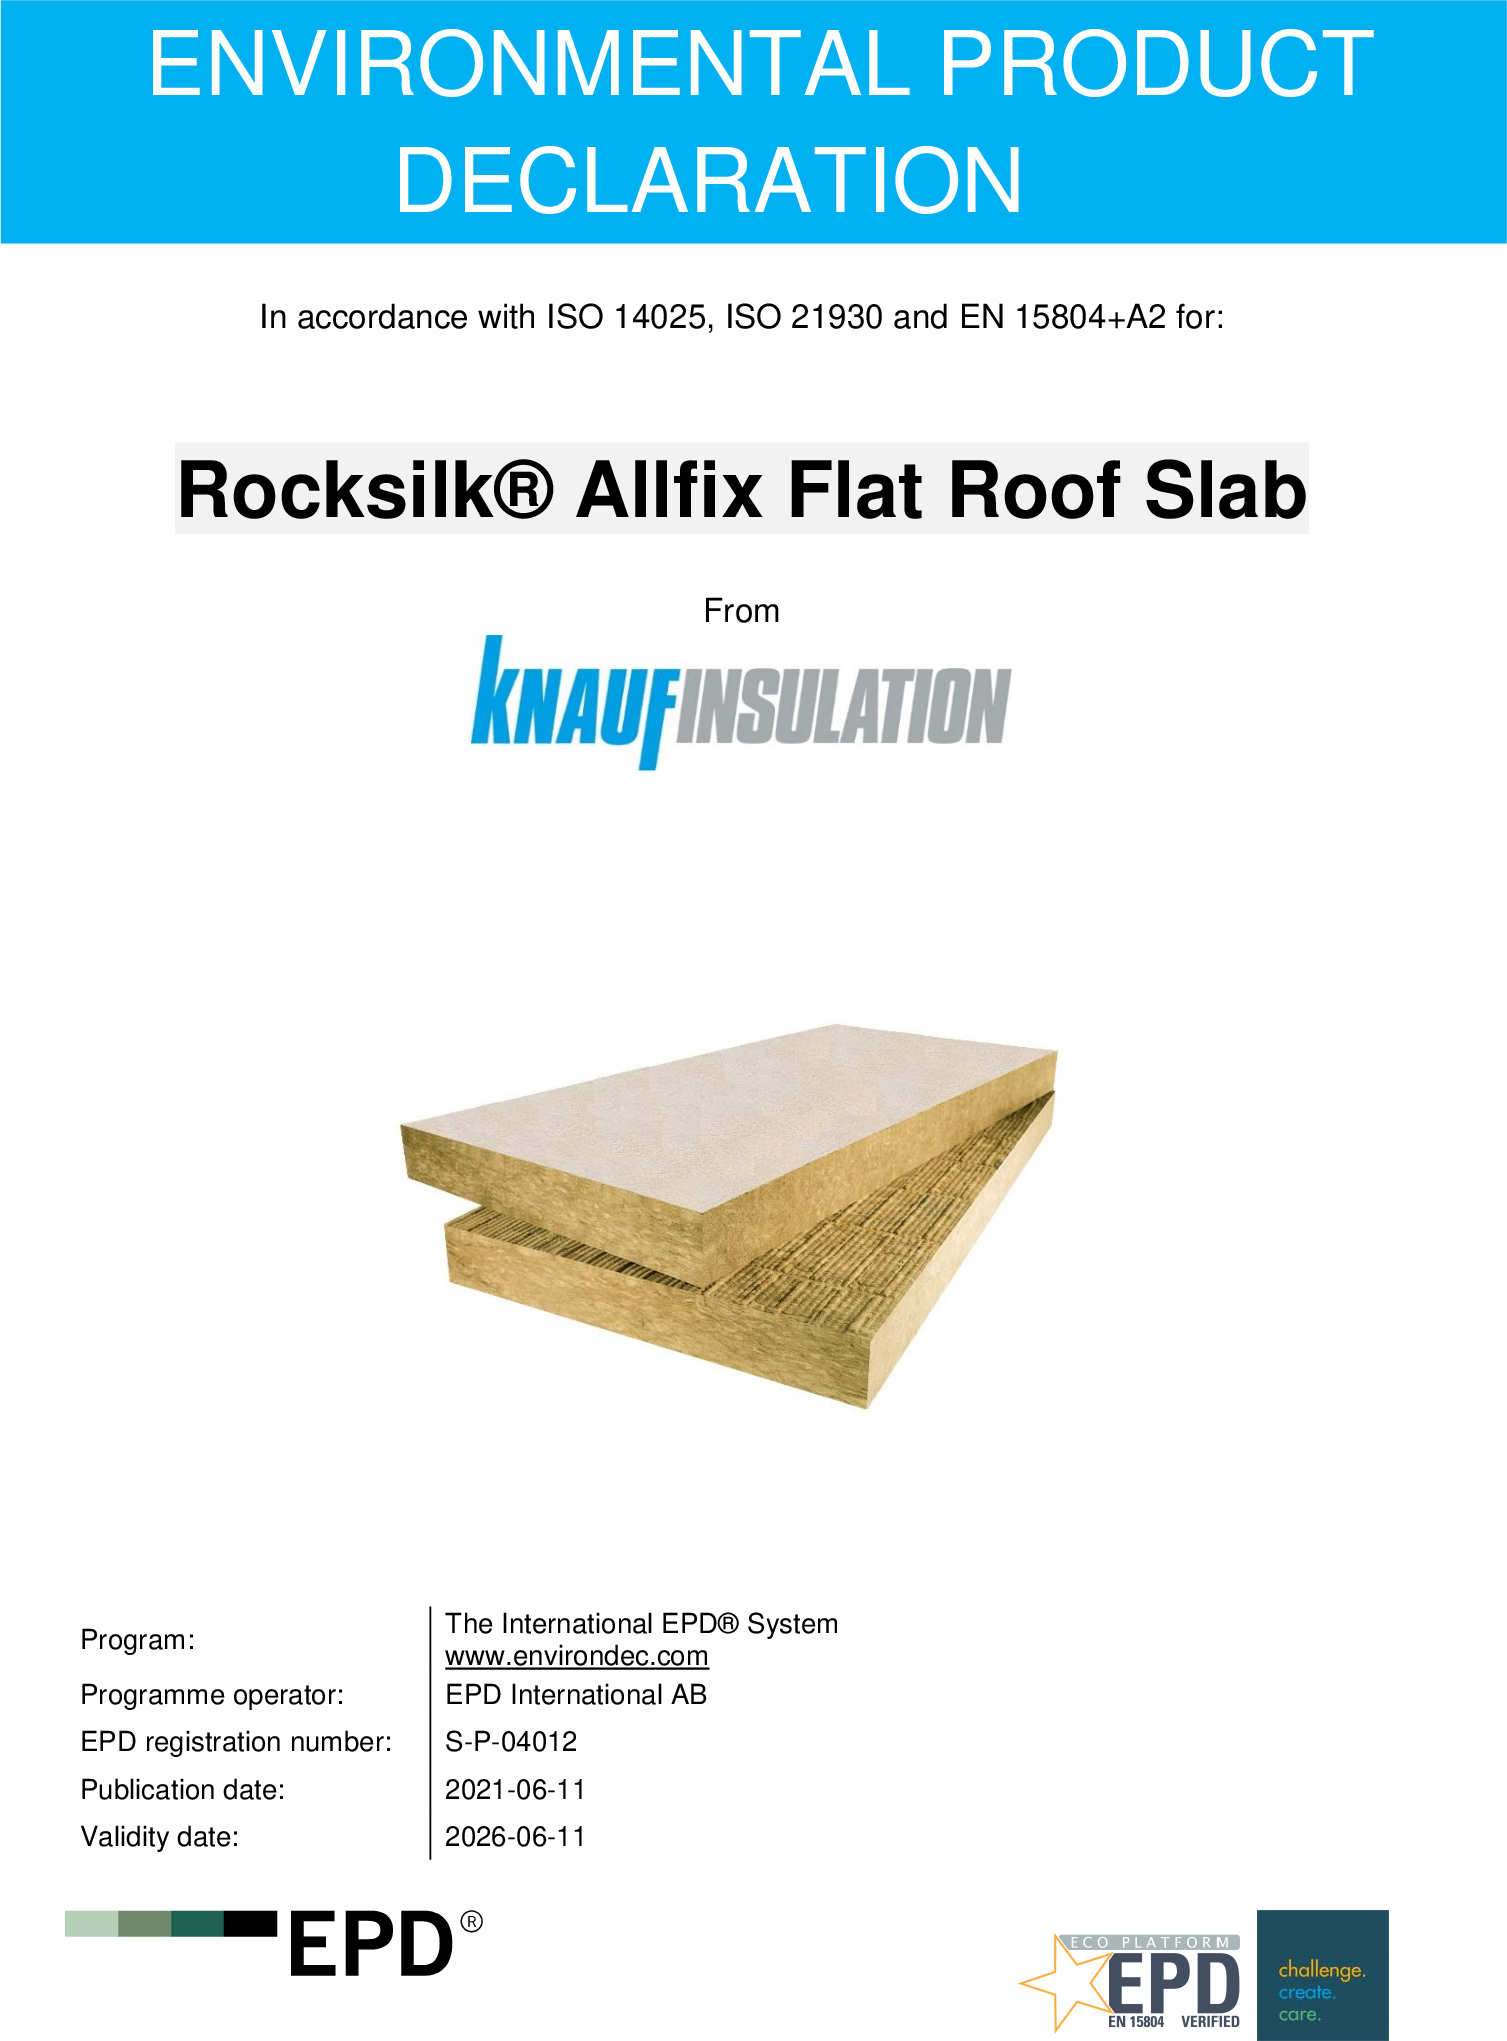 Rocksilk® Allfix Flat Roof Slab